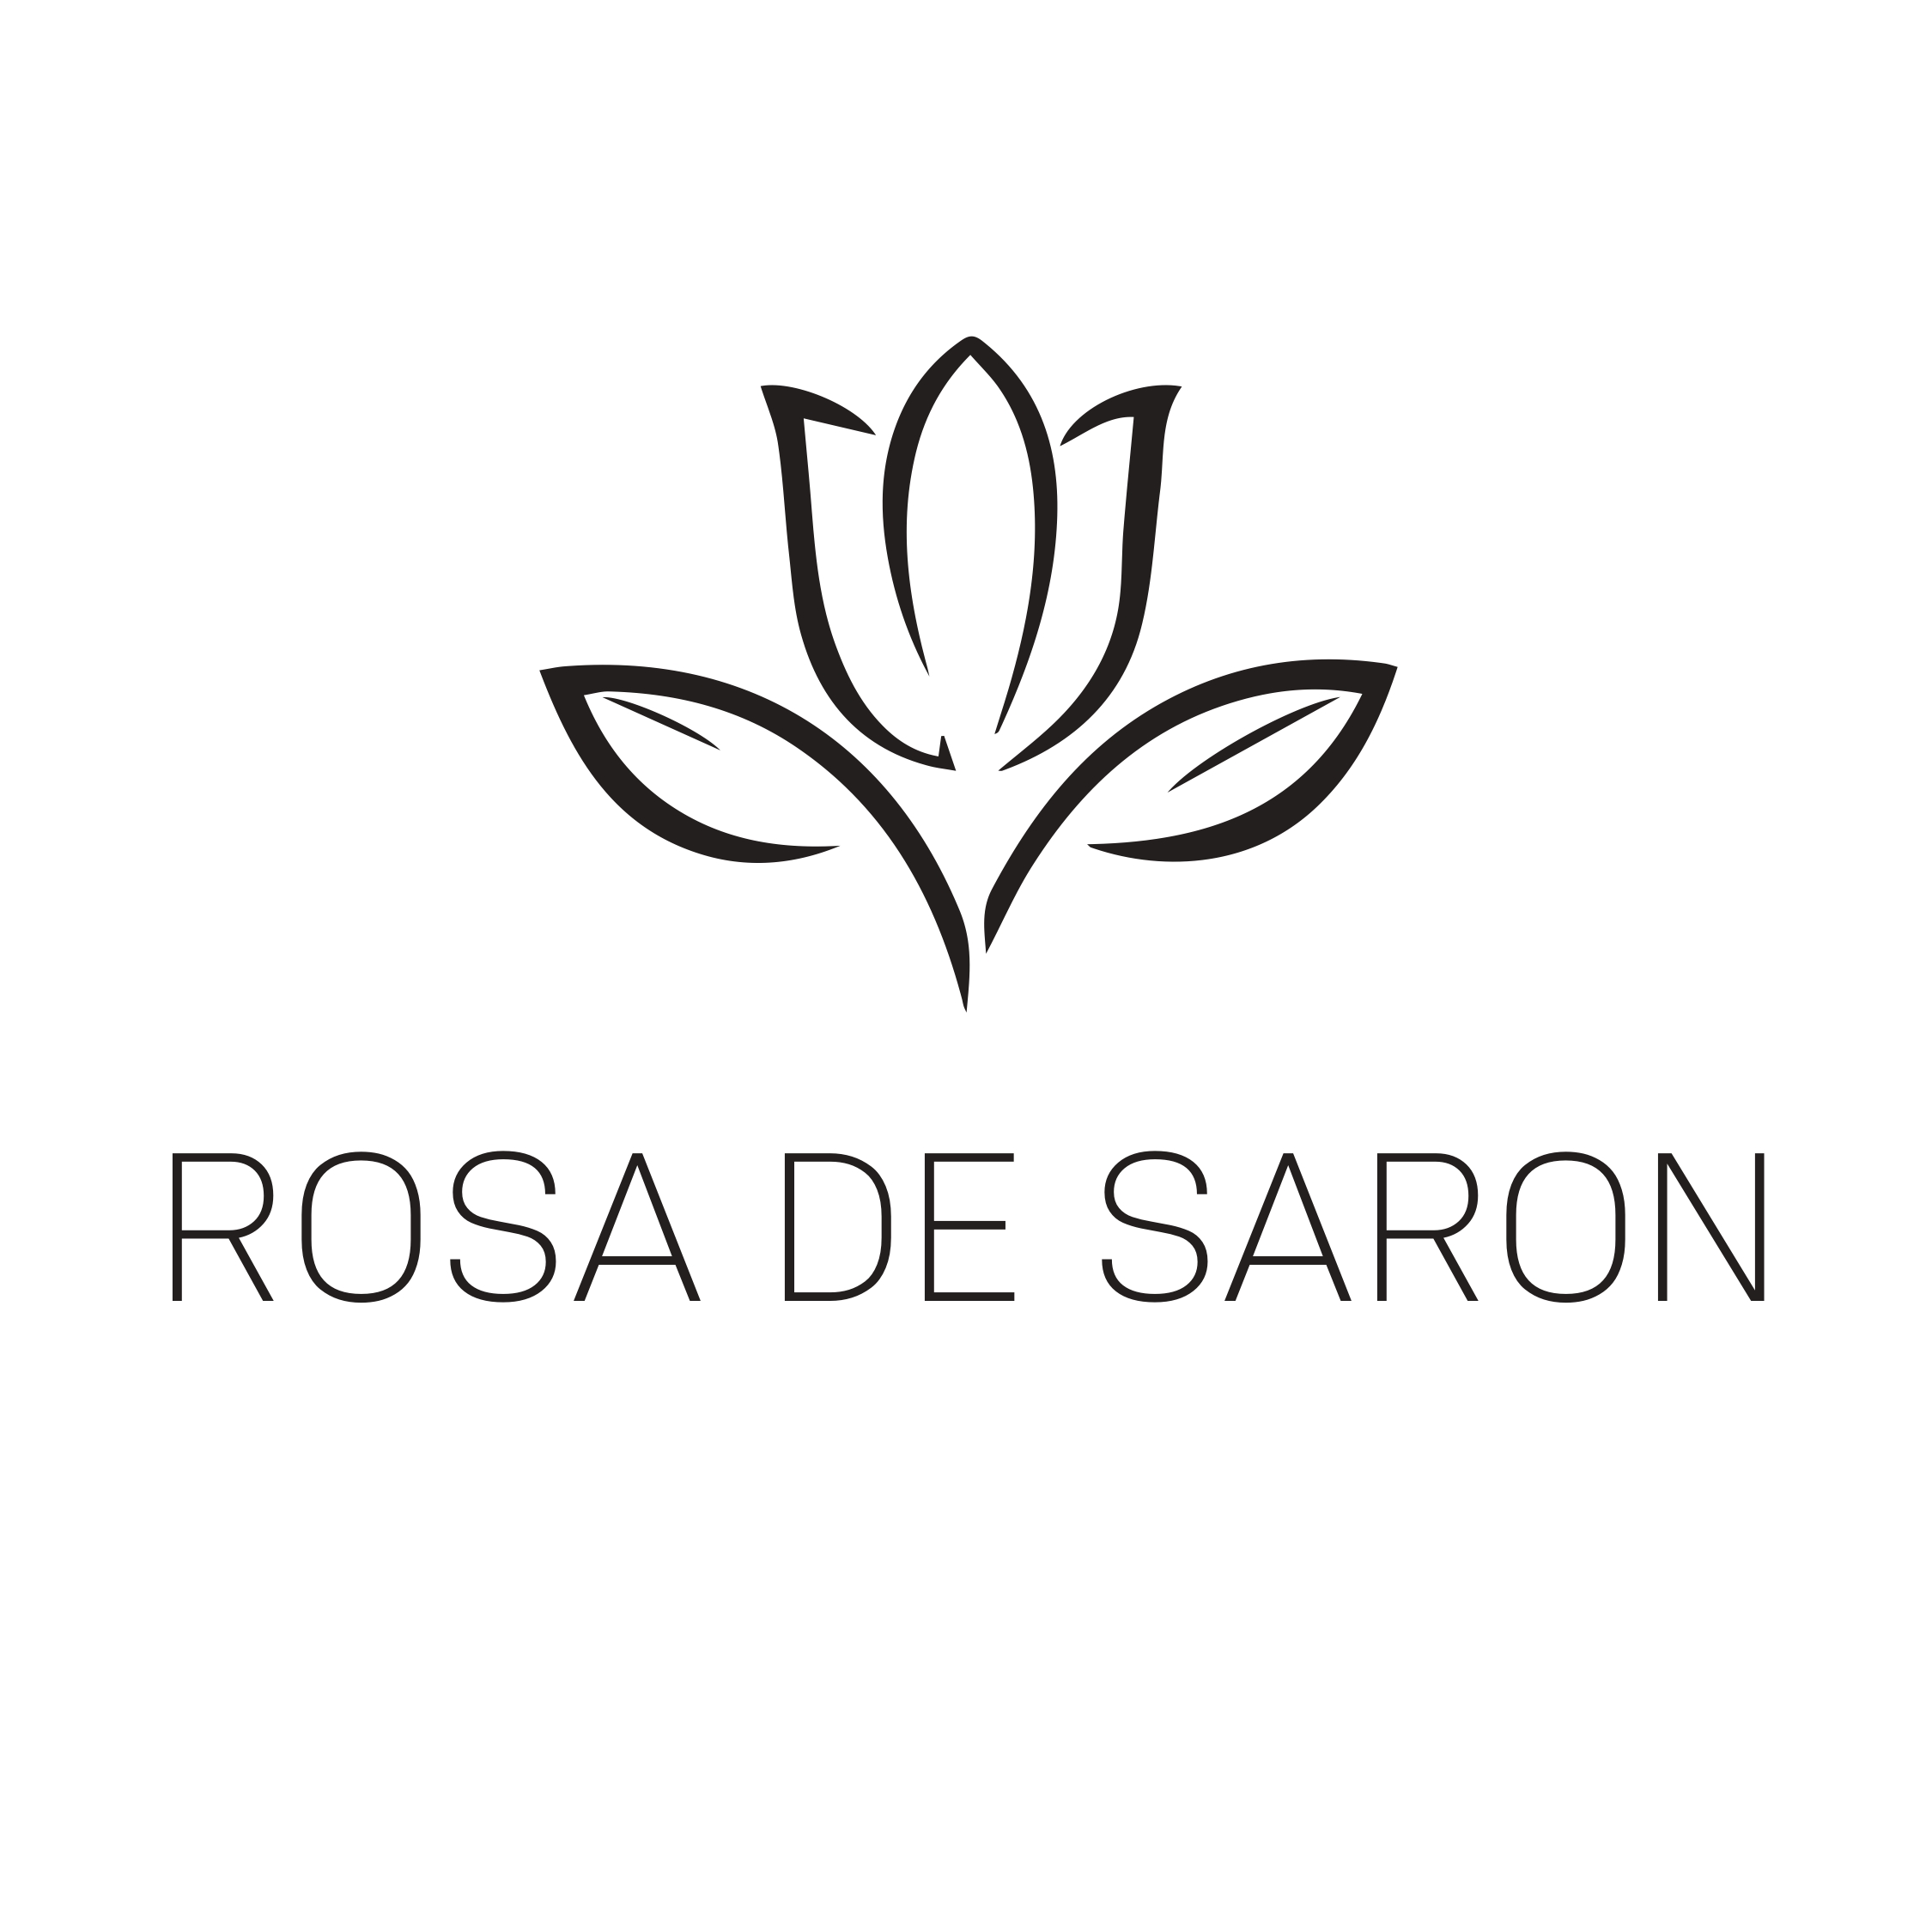 ROSA DE SARON